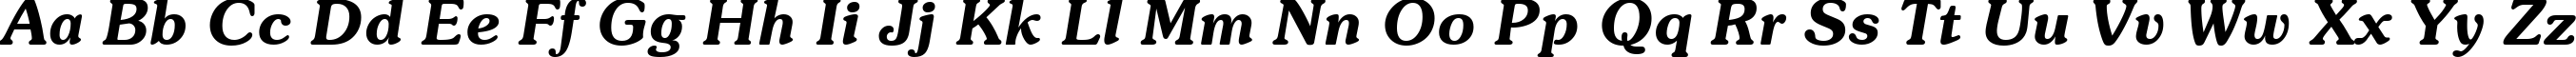 Пример написания английского алфавита шрифтом Souvenir Demi Italic BT